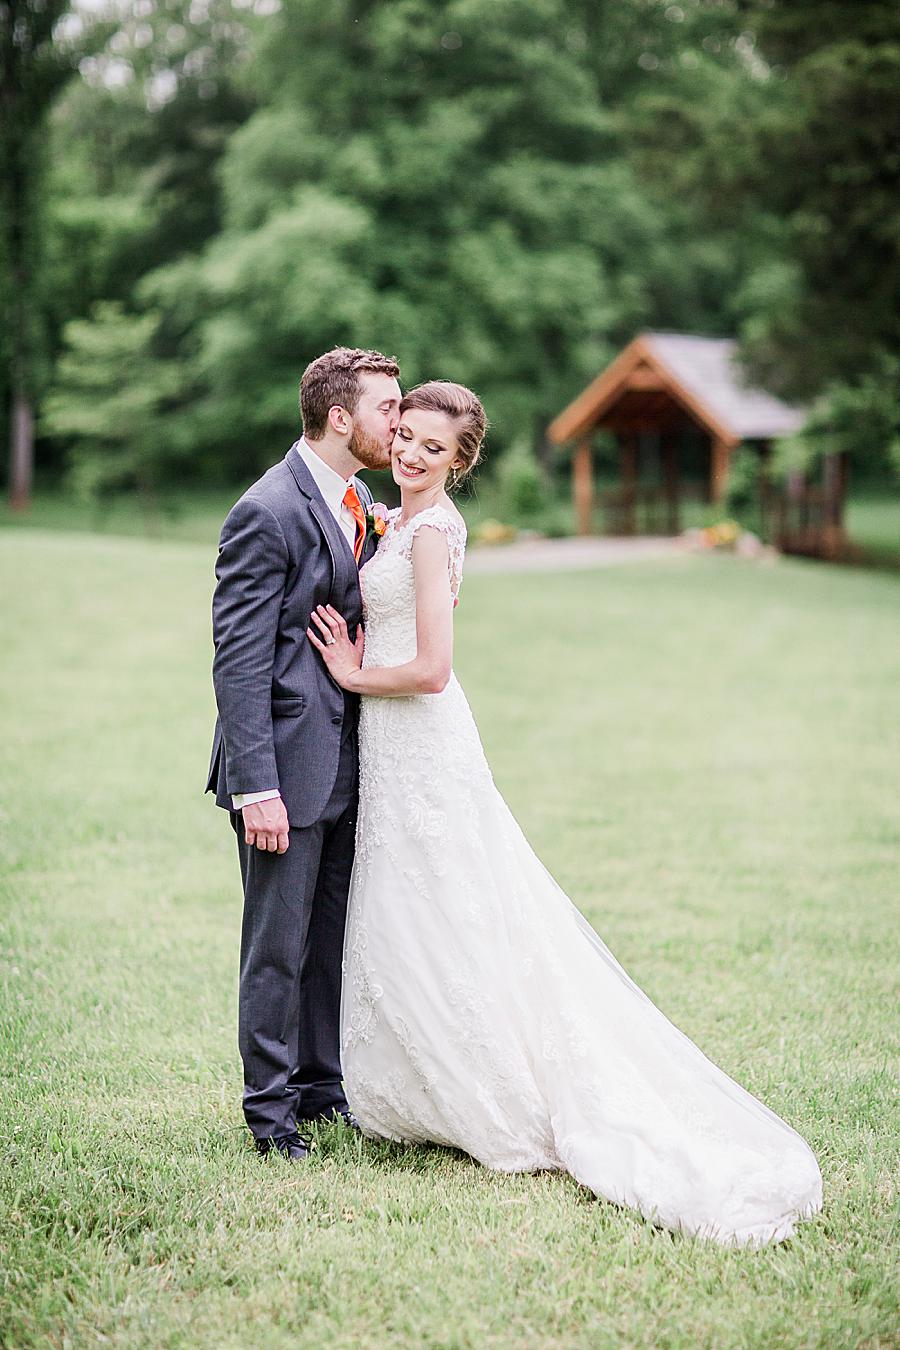 Kiss on the cheek at this Ramble Creek Vineyard Wedding by Knoxville Wedding Photographer, Amanda May Photos.